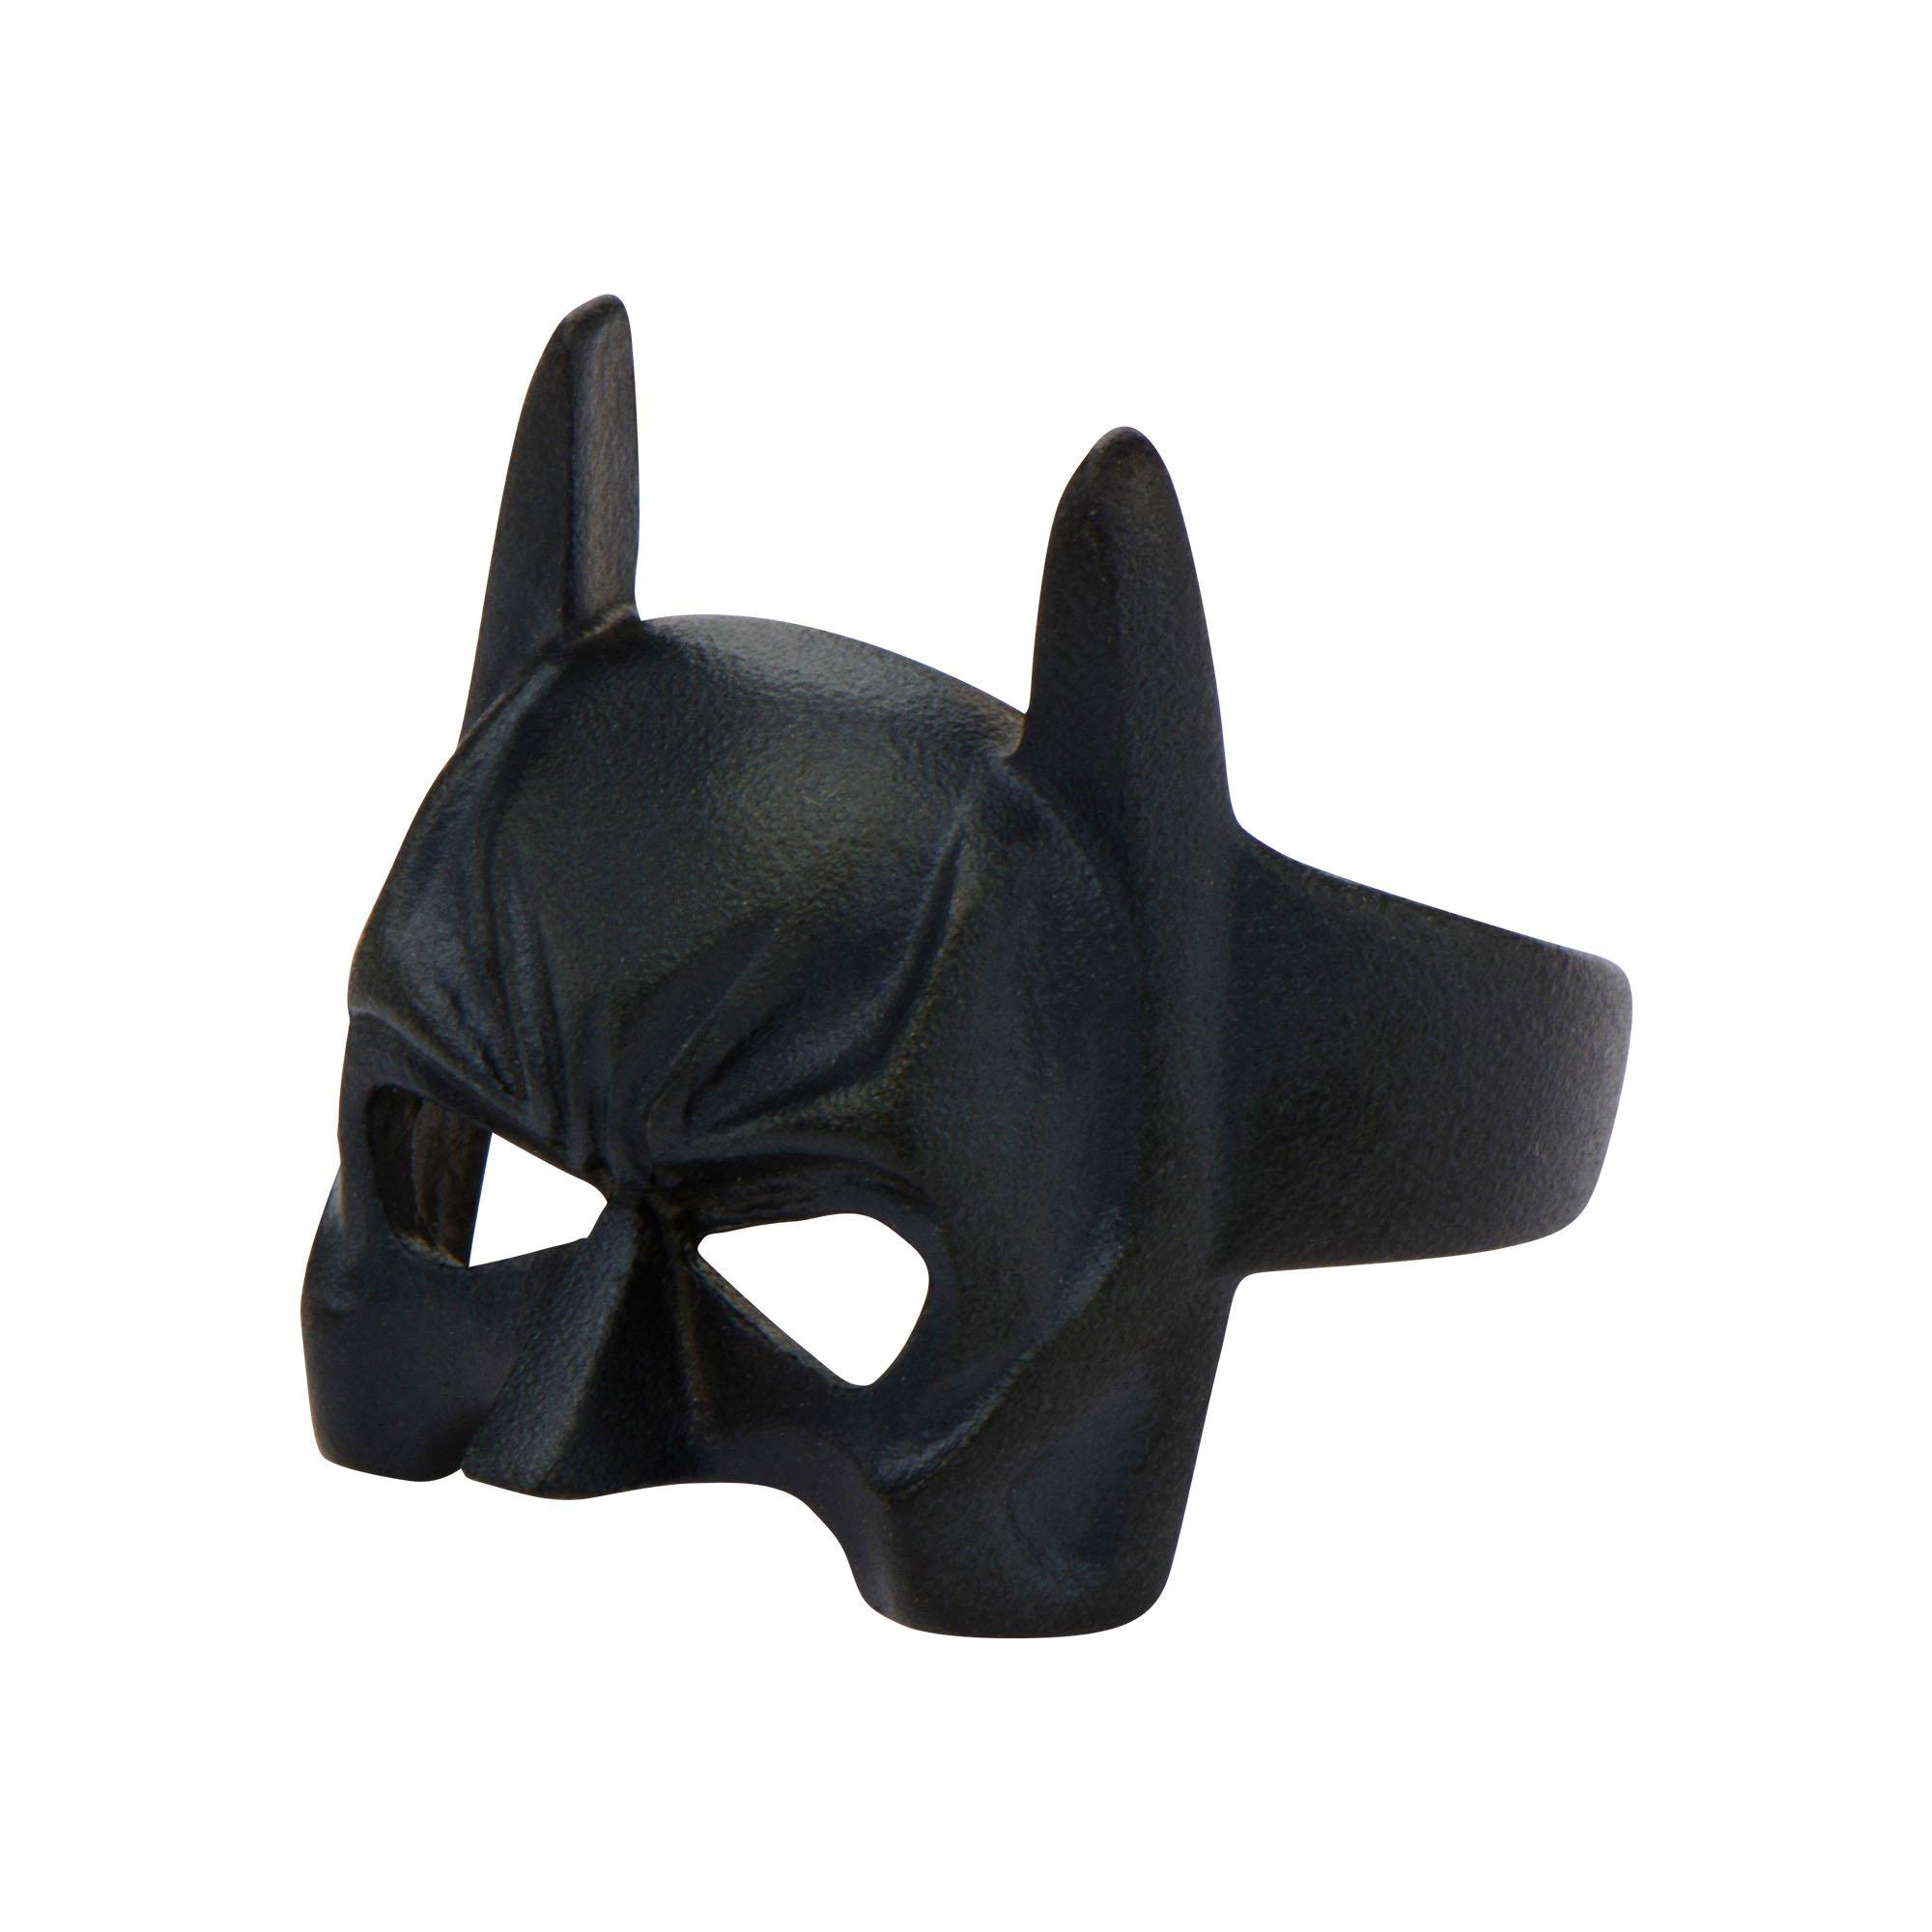 Masque Batman - The Batman